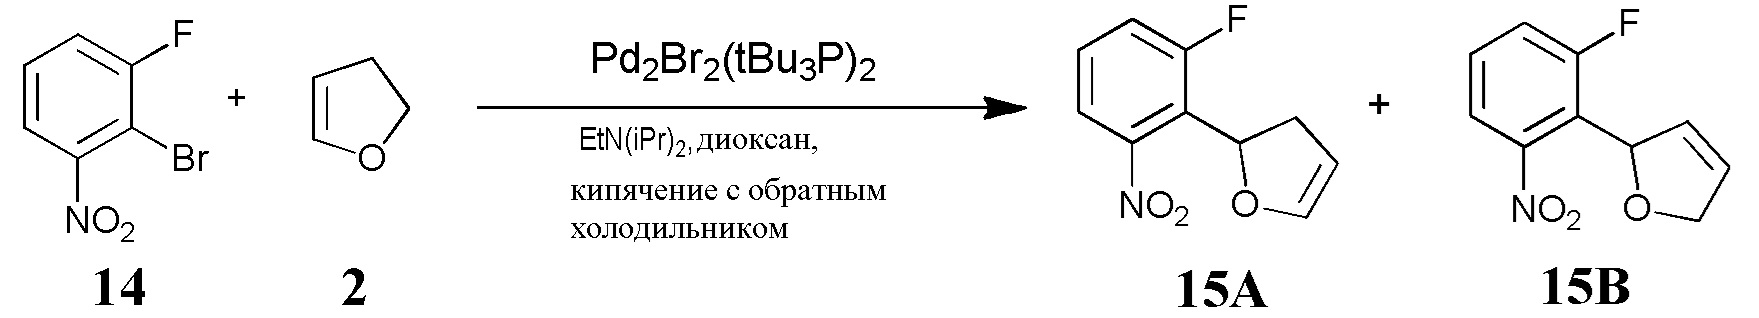 Br2 диоксан. Комплекс брома с диоксаном. 1-Бром-2-нитро-5-карбоксибензол. Анизол br2 диоксан. Бром фтор 5